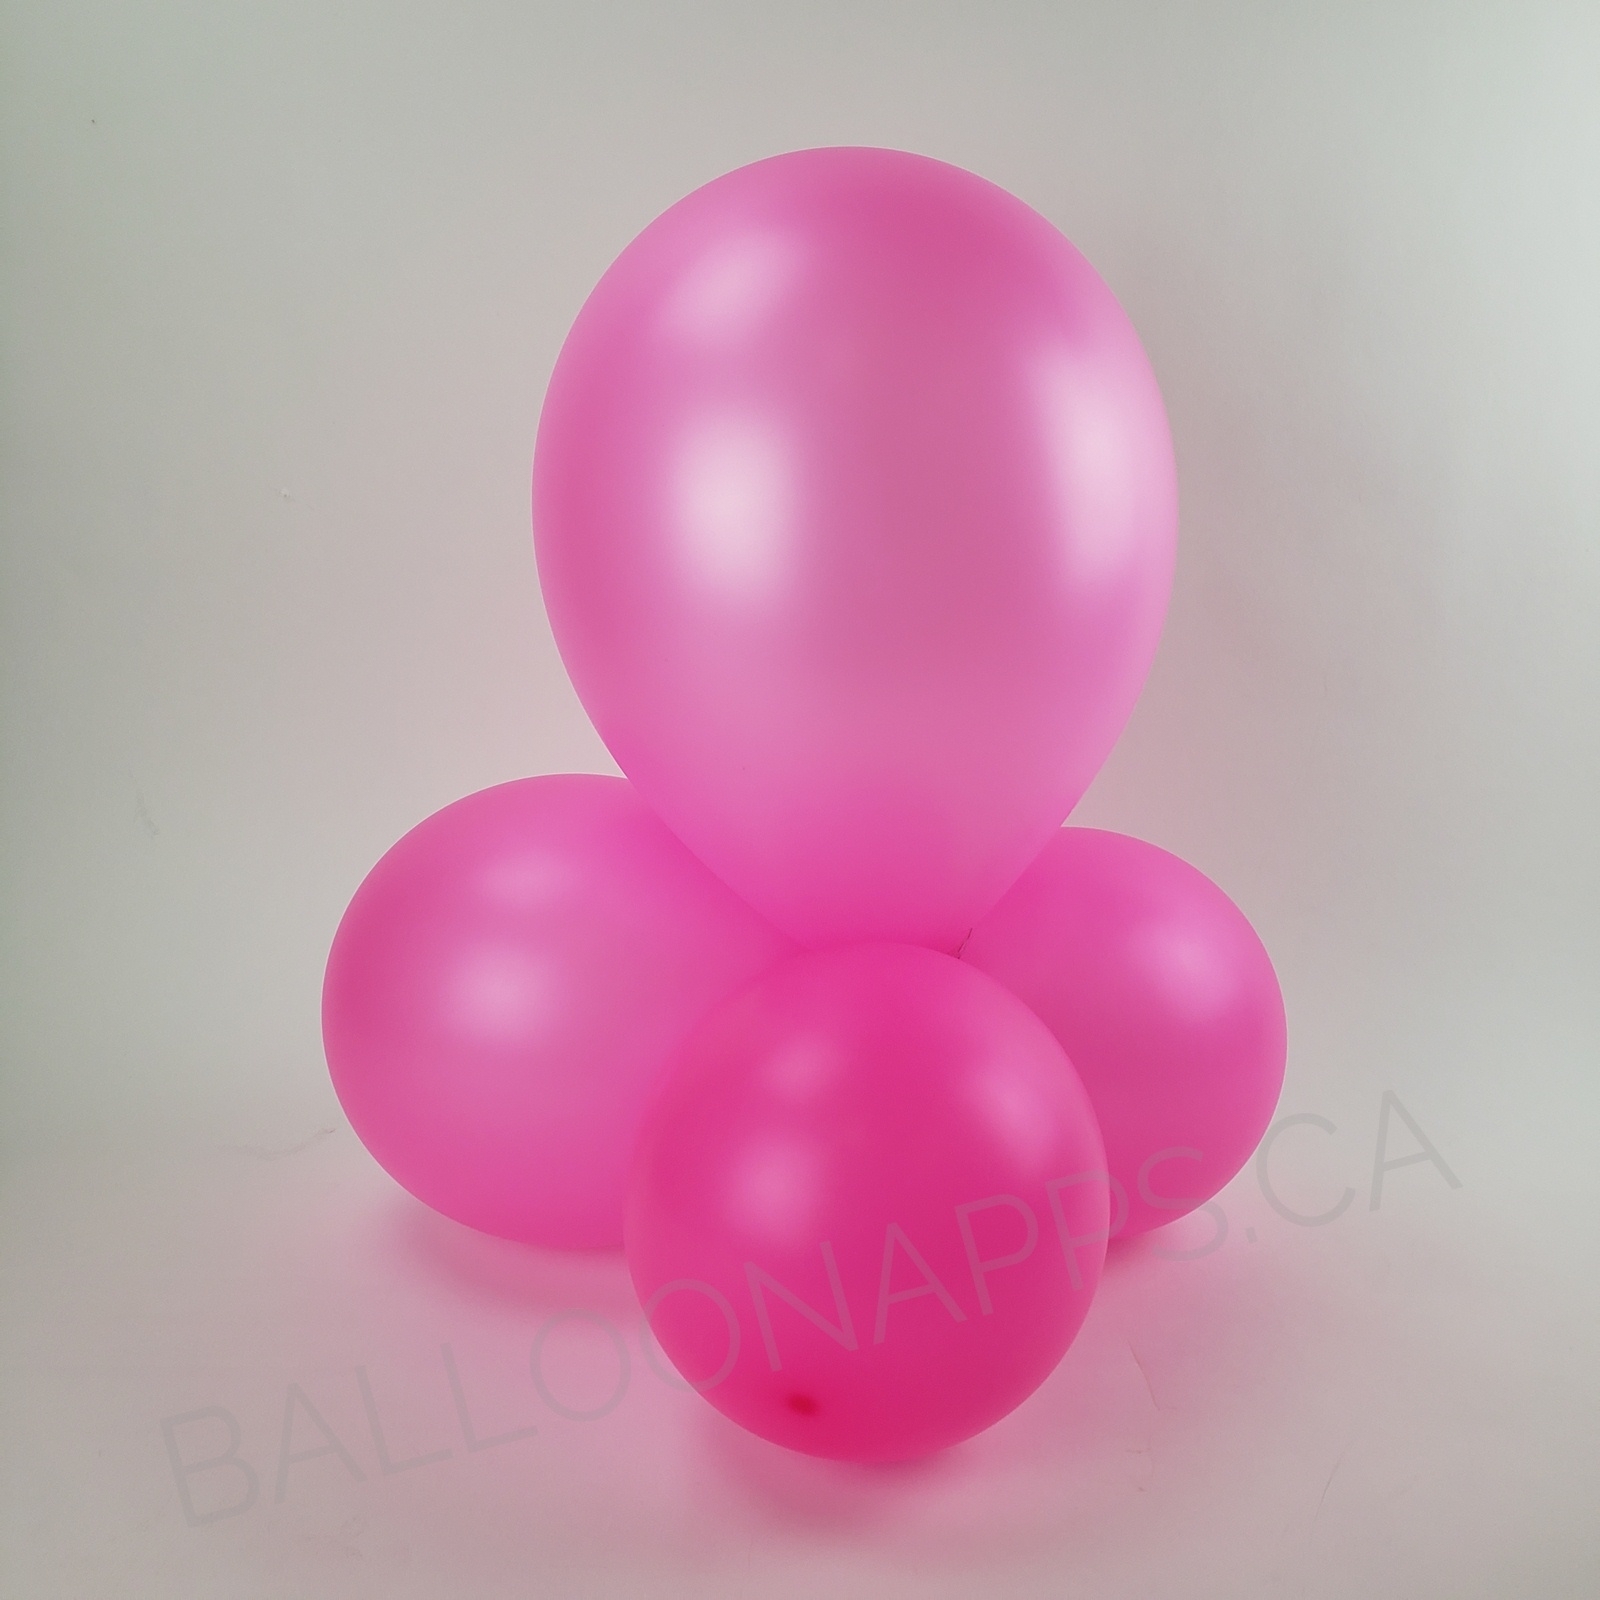 balloon texture SEM (50) 260 Neon Magenta balloons